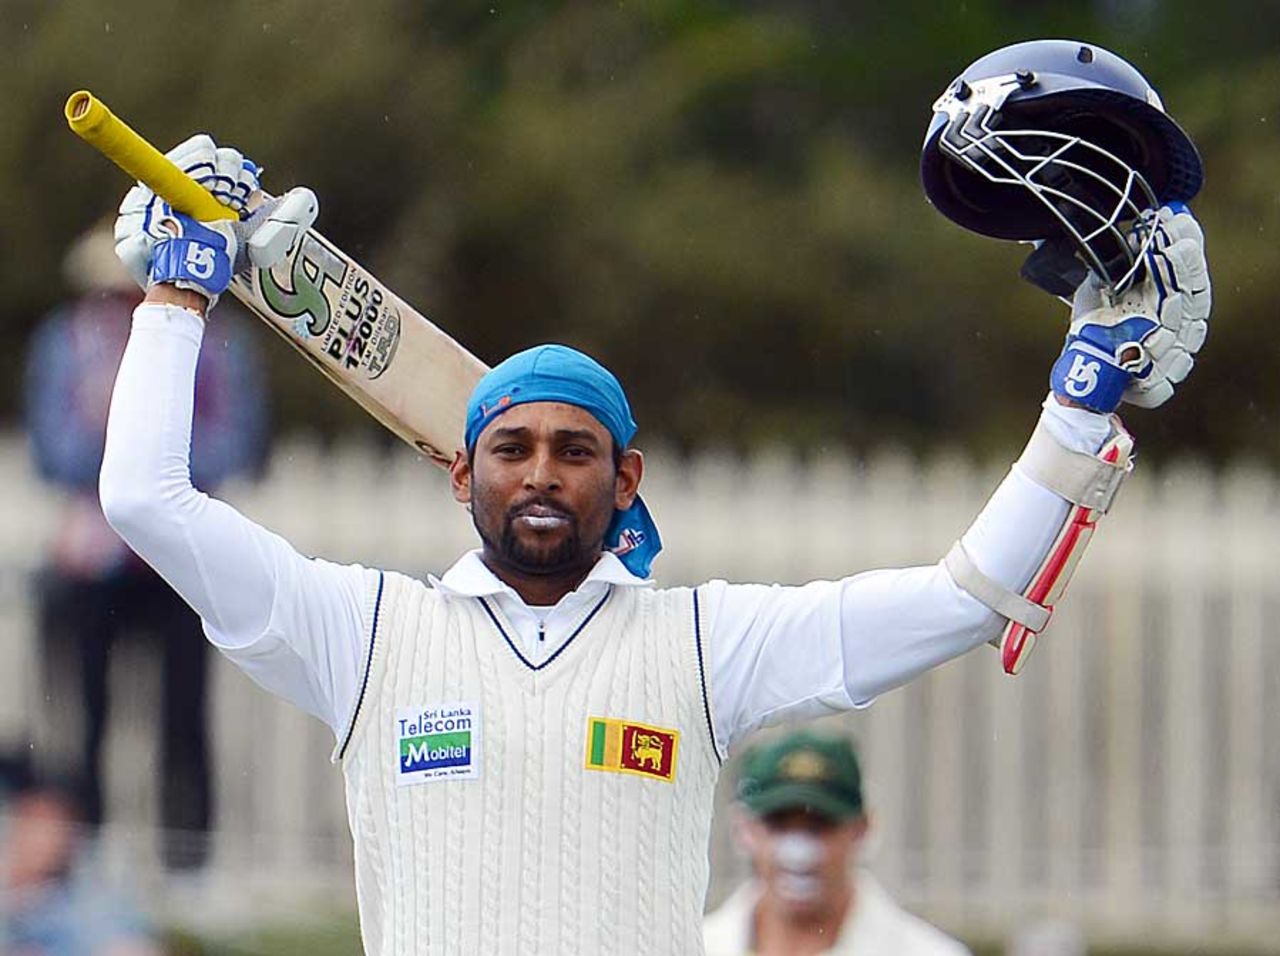 Tillakaratne Dilshan scored his 15th Test ton, Australia v Sri Lanka, 1st Test, Hobart, 3rd day, December 16, 2012